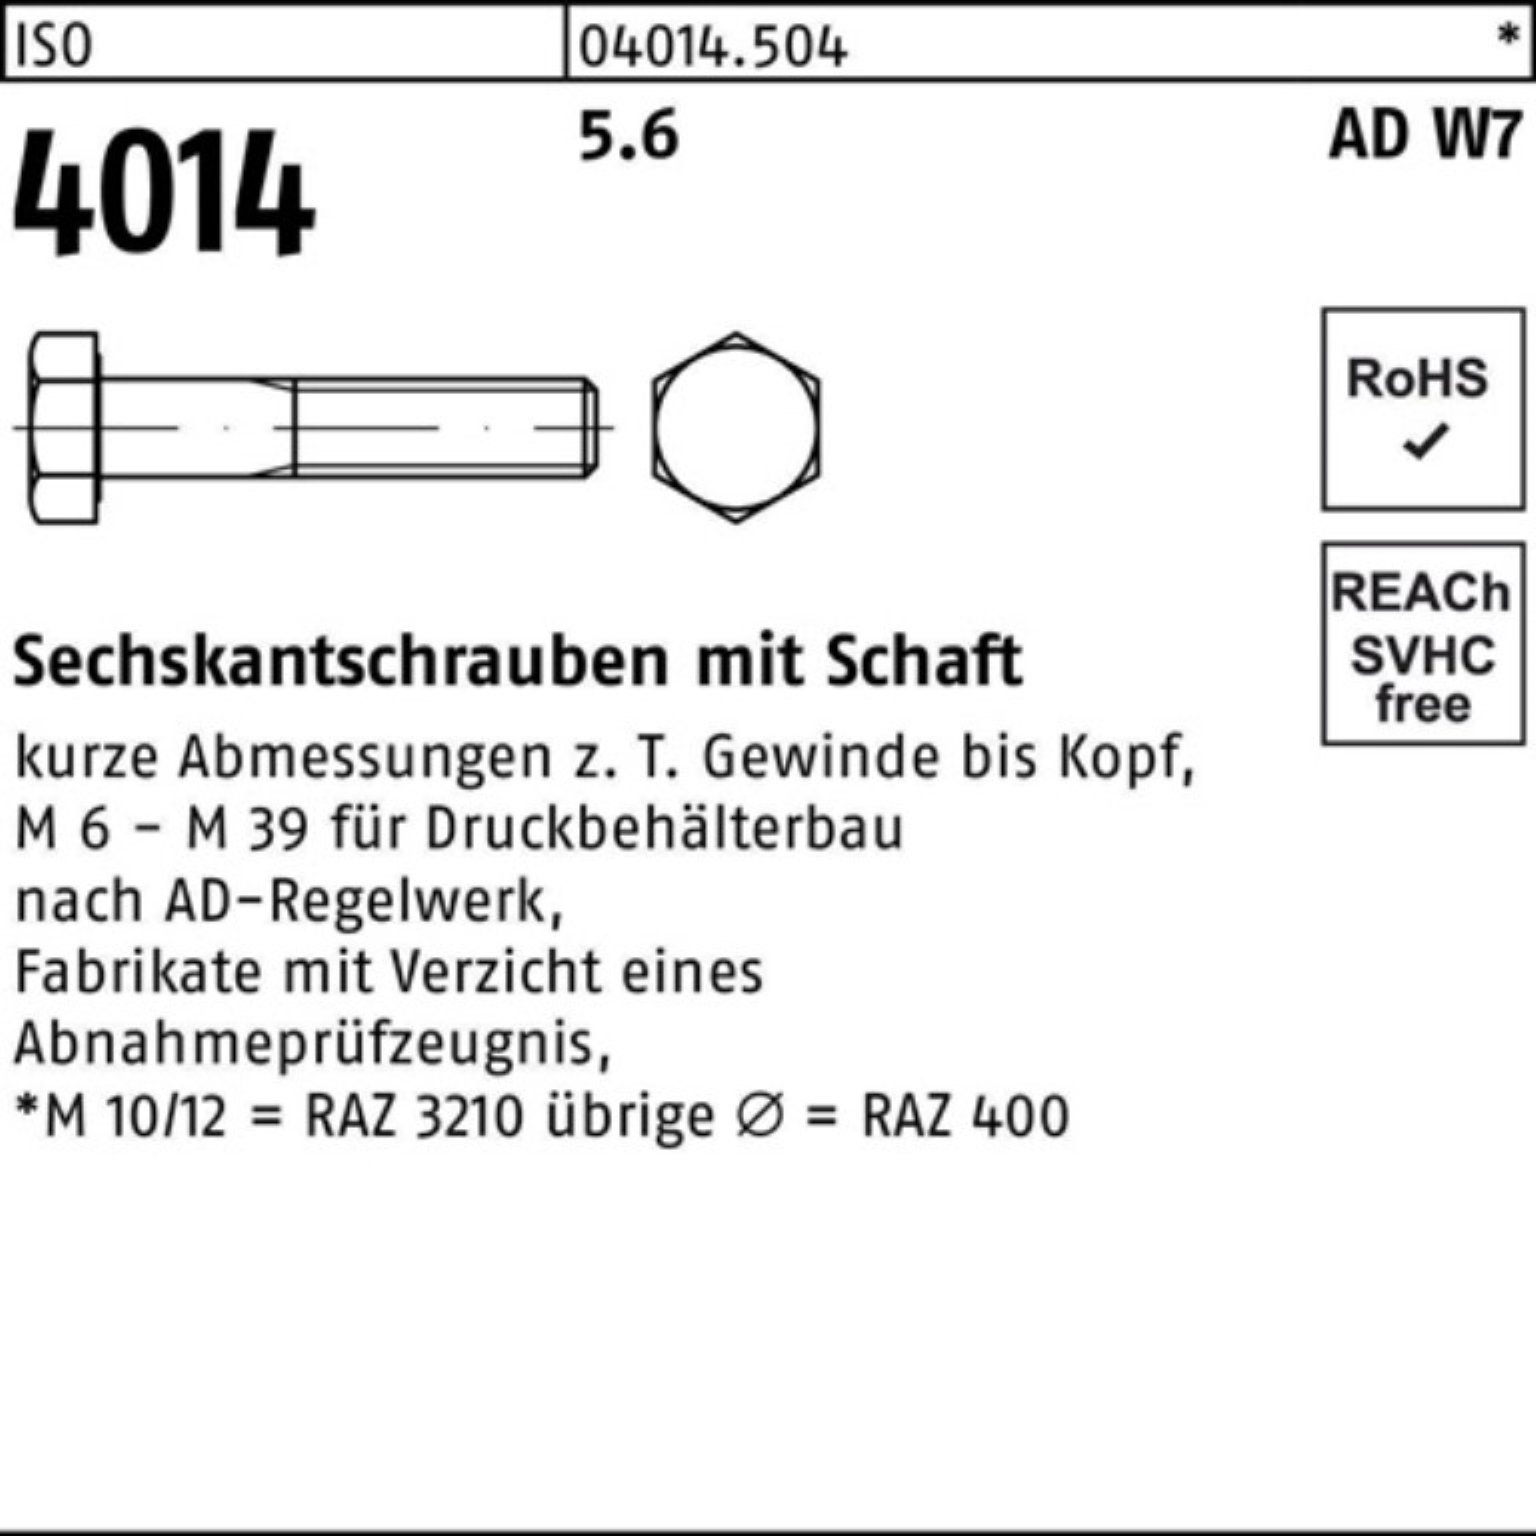 M20x Sechskantschraube 150 25 Sechskantschraube Schaft Pack 4014 W7 5.6 ISO 100er Bufab Stück